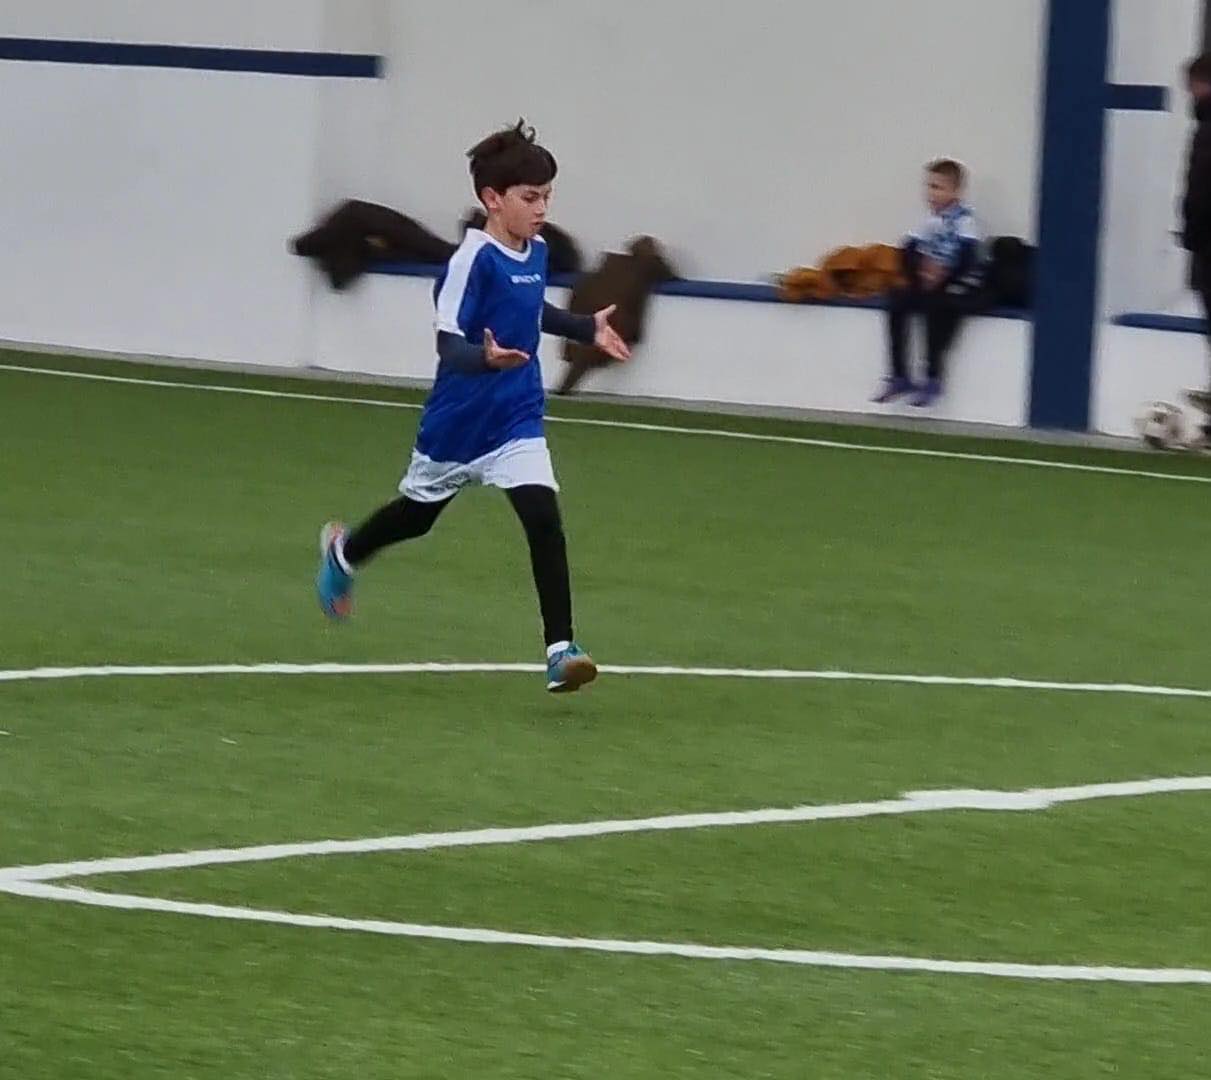 Leart Behluli, një talent i ri që ka nisur të shkëlqejë në futbollin kosovar